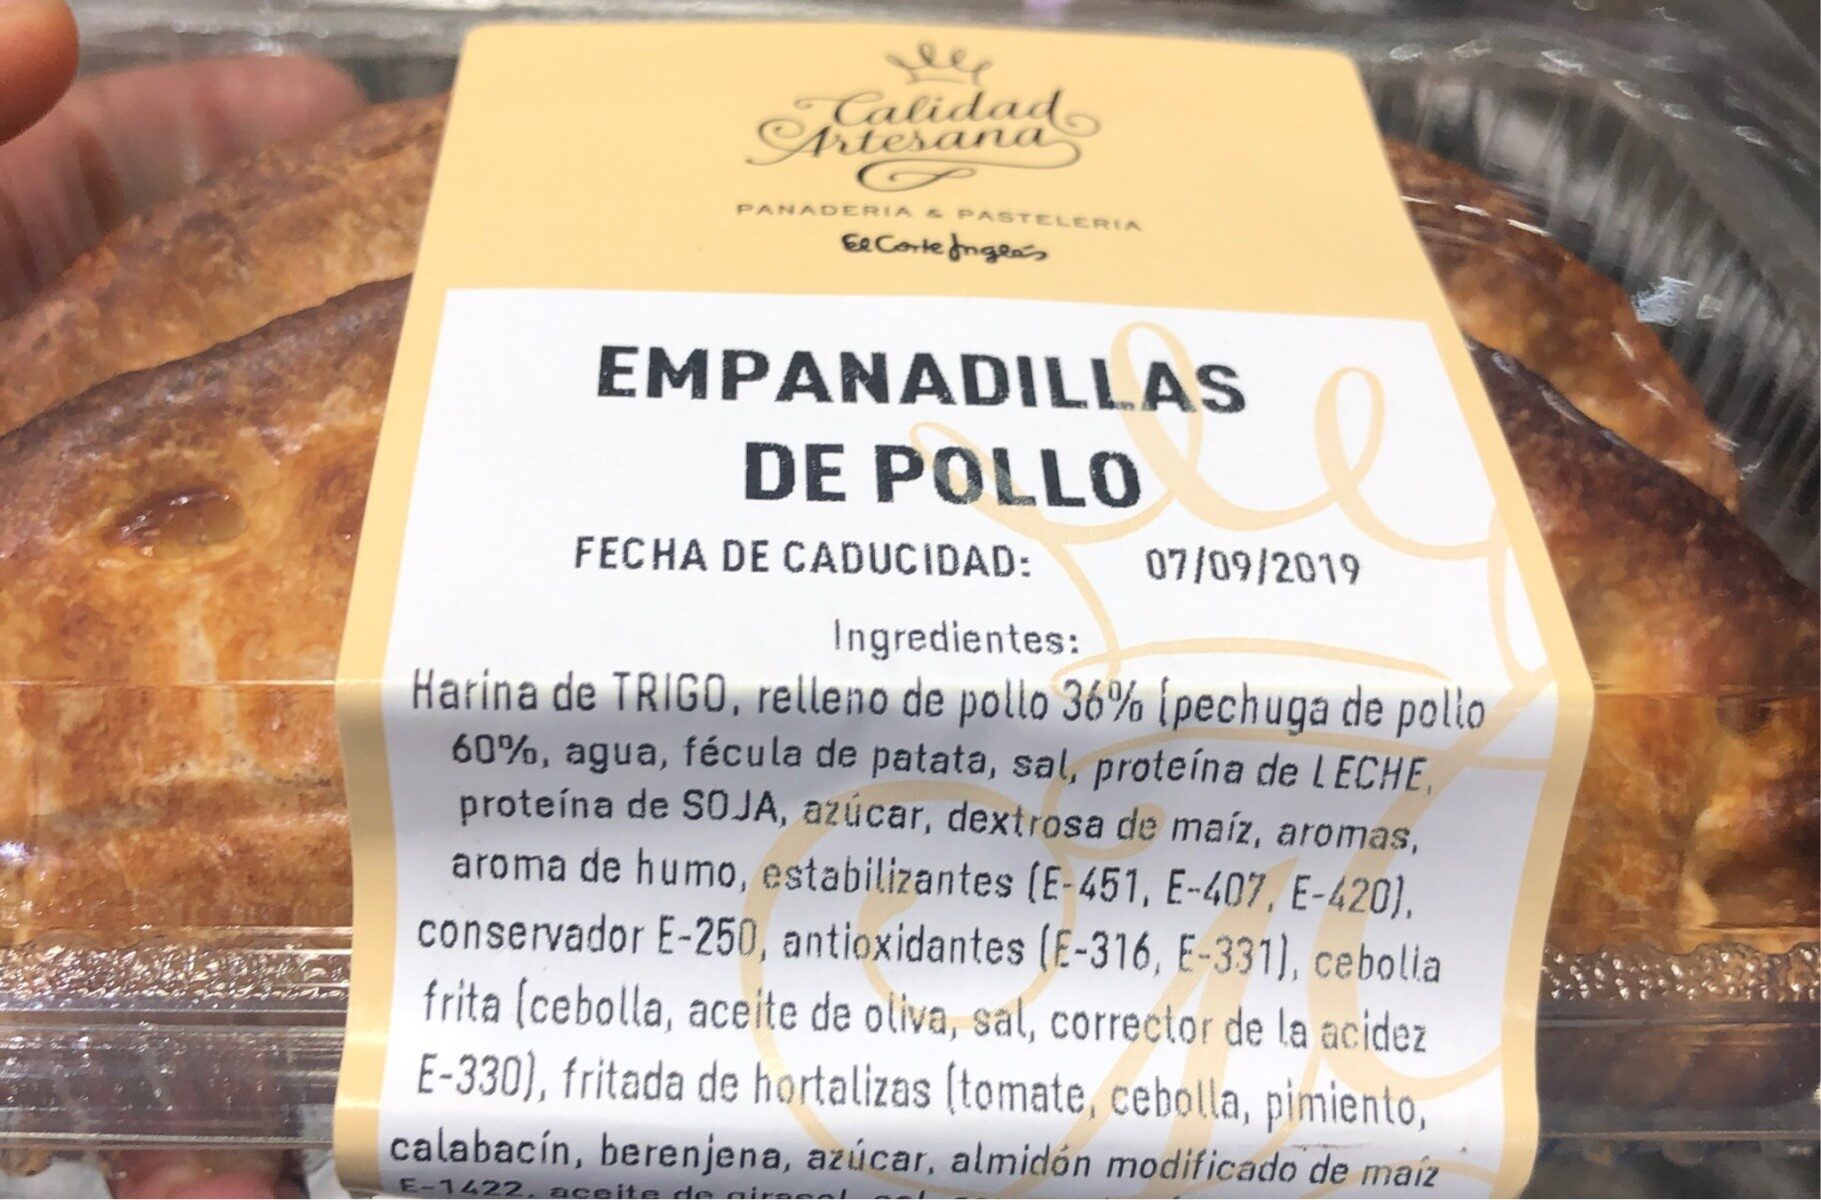 Empanadillas de pollo - Product - es